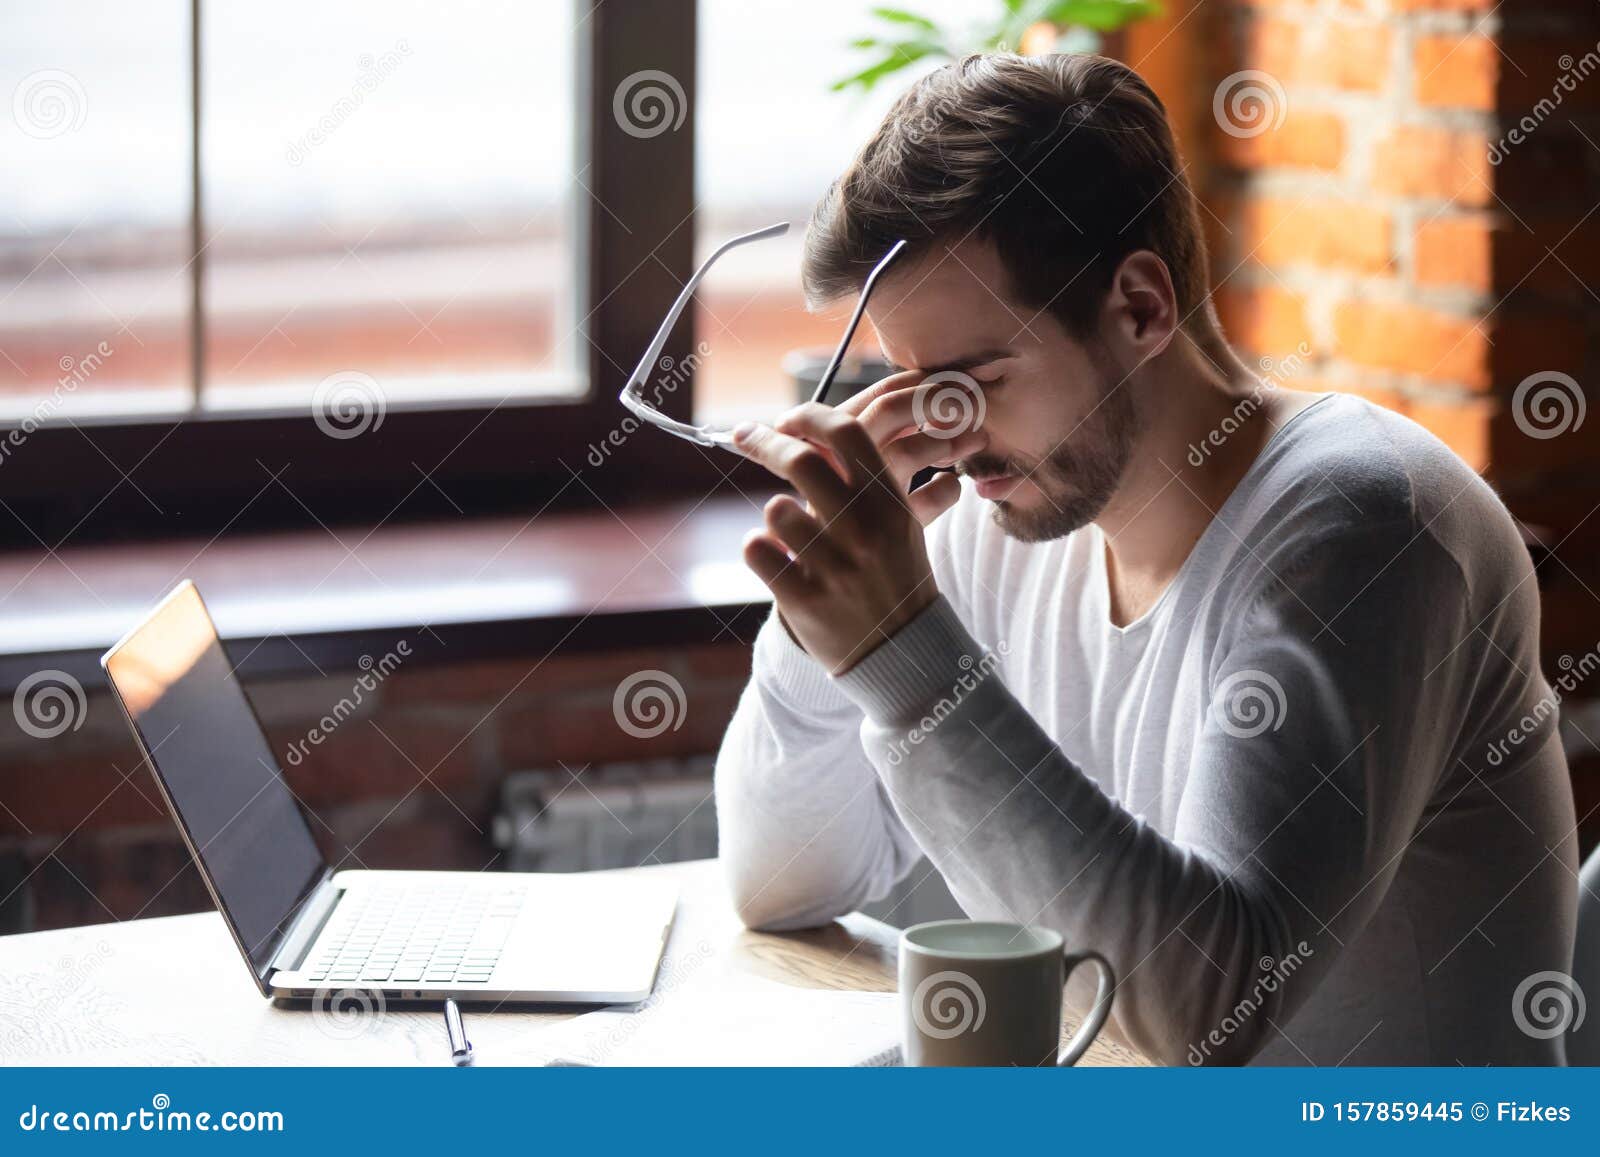 upset man massaging nose bridge, taking off glasses, feeling eye strain